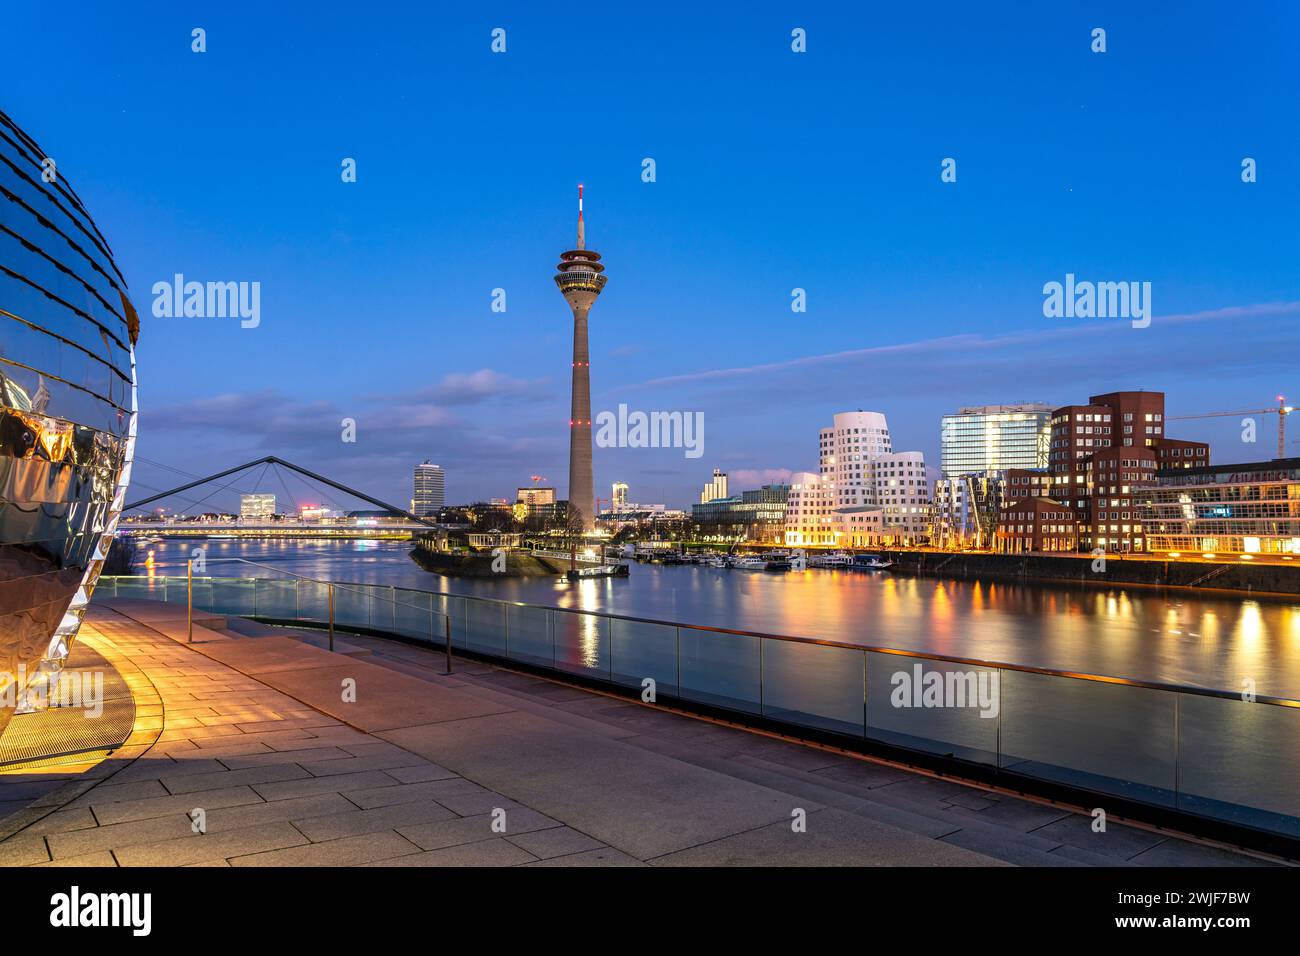 Blick von der Terrasse des Hyatt Hotel auf die Gehry-Bauten - Neuer Zollhof am Medienhafen und den Rheinturm a Düsseldorf in der Abenddämmerung, Nord Foto Stock